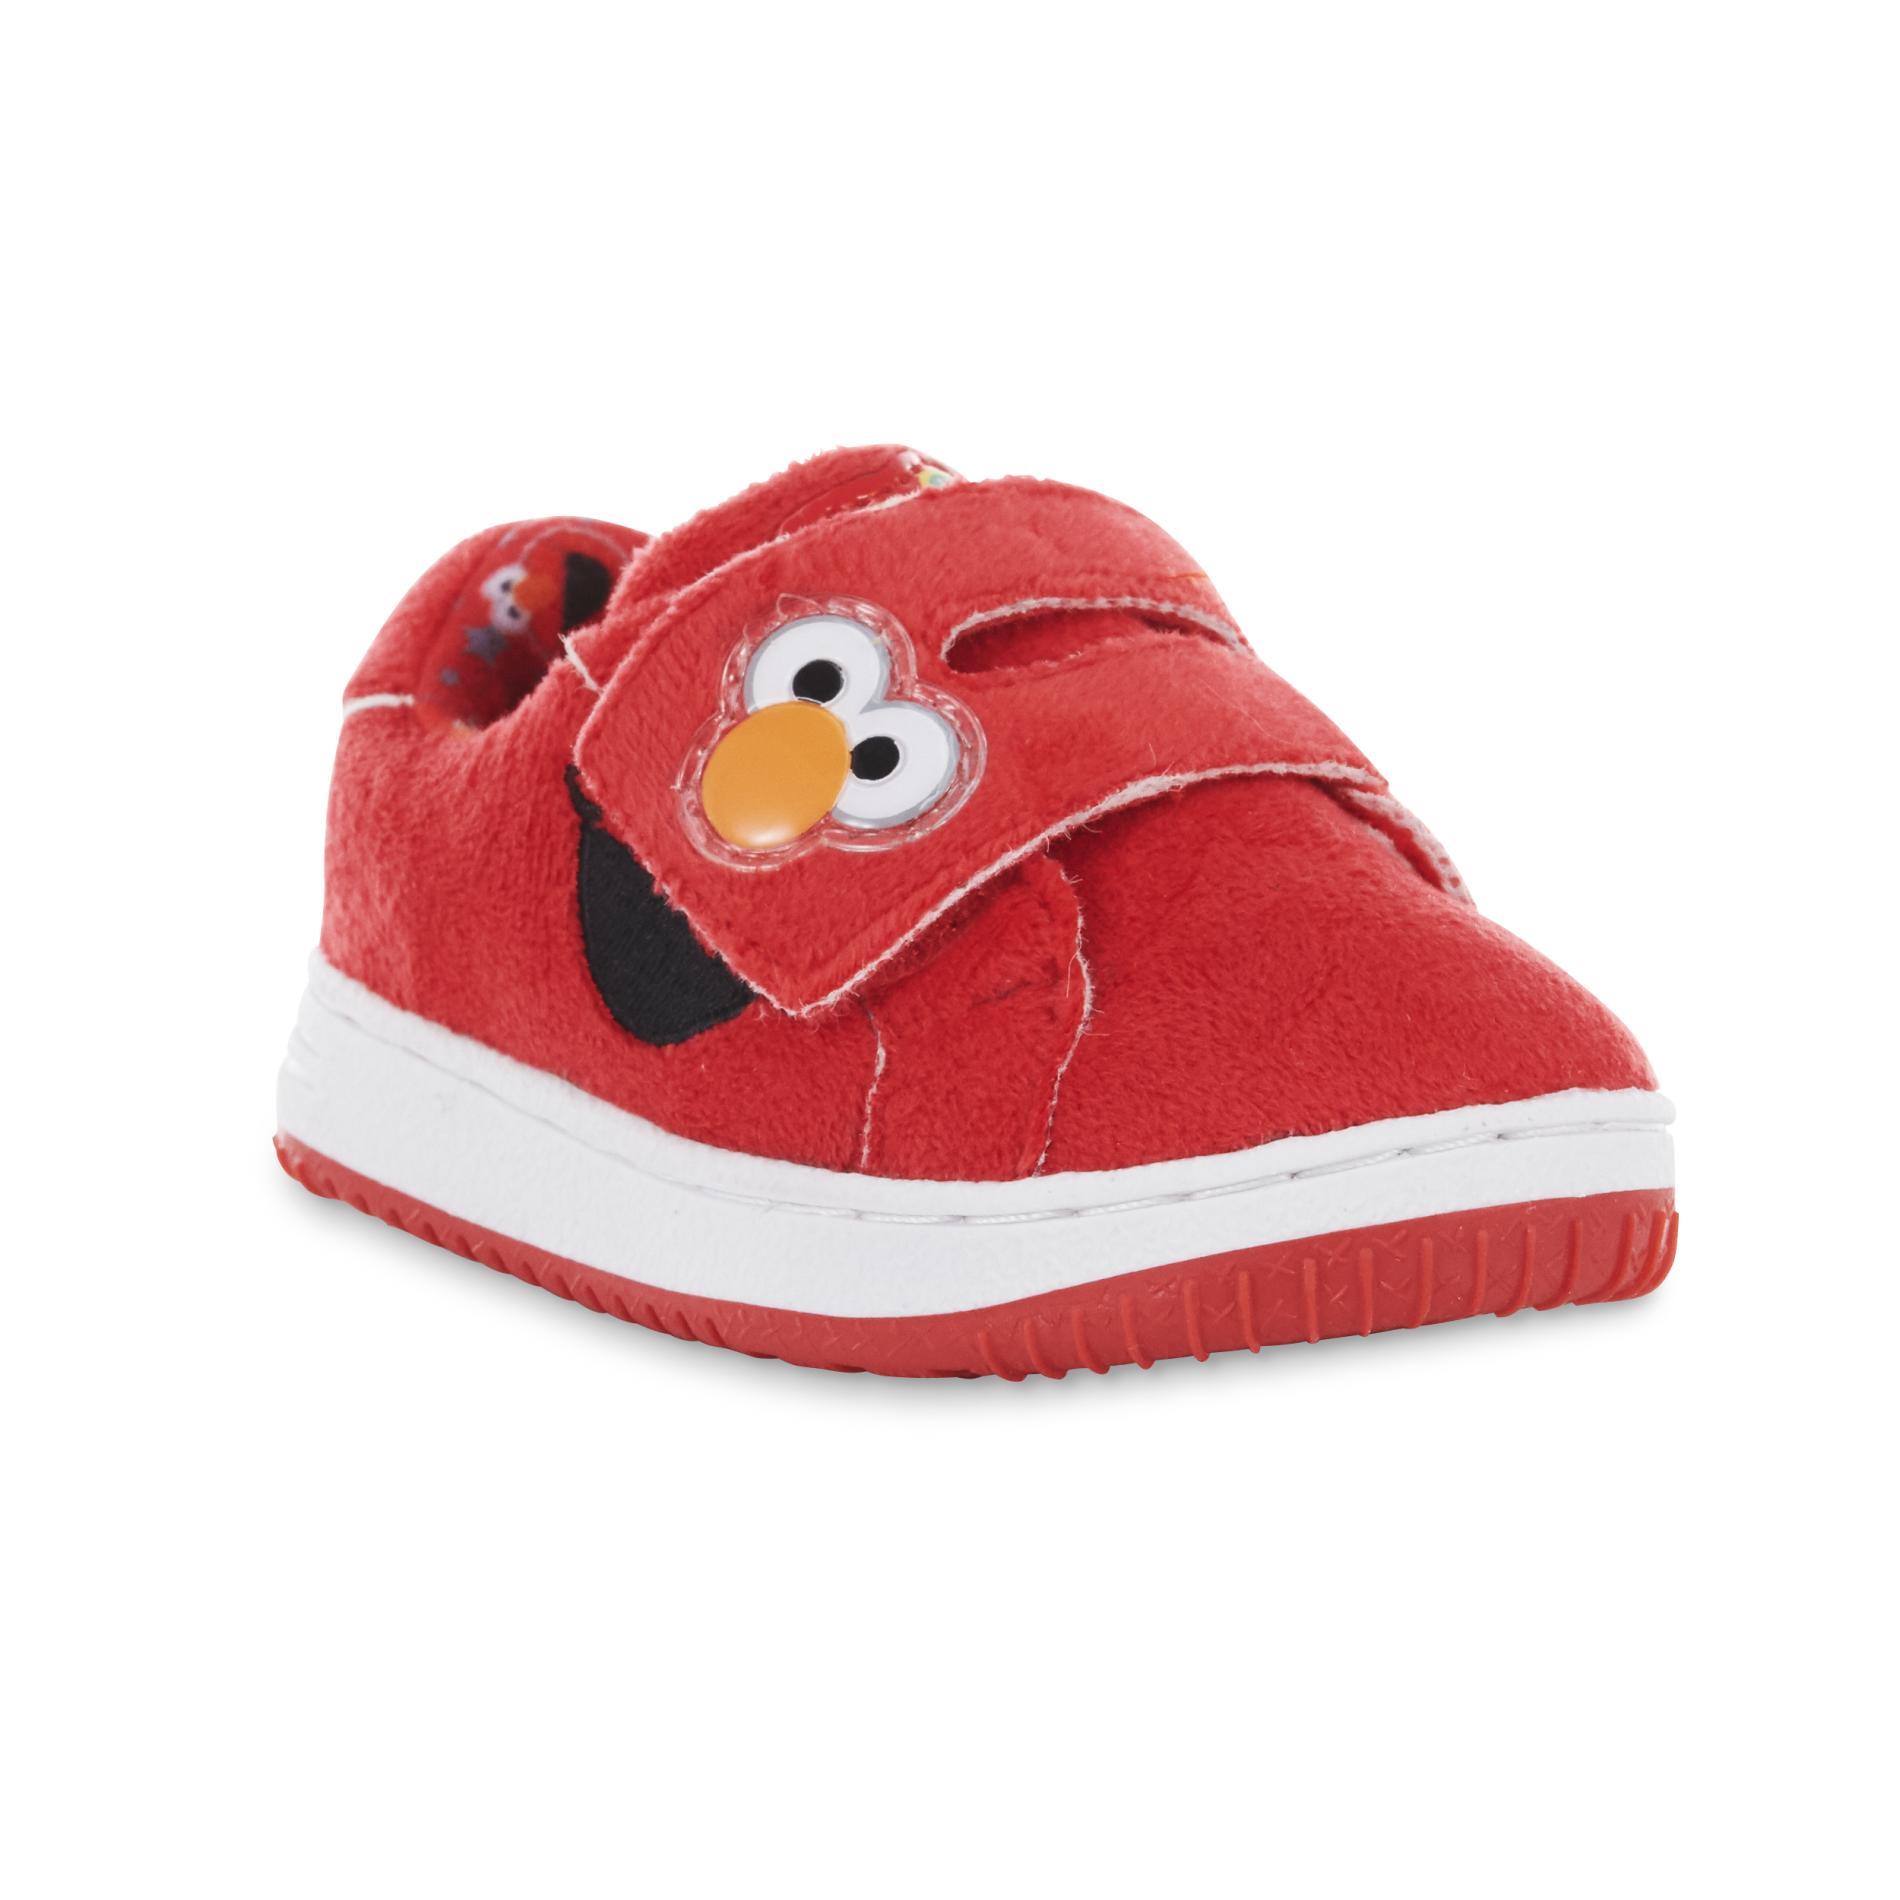 Sesame Street Toddler Girl's Elmo Red Sneaker Clothing